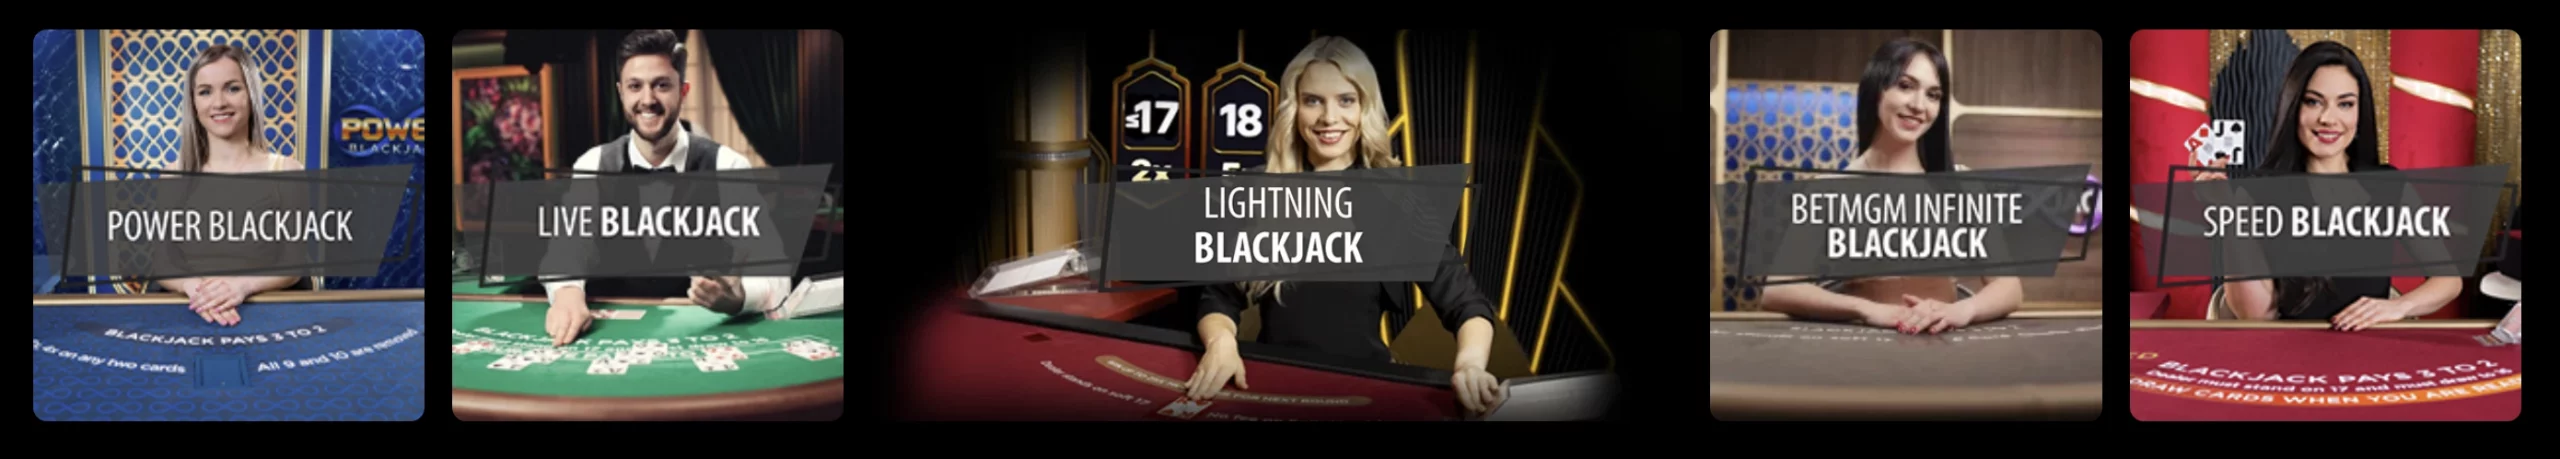 Blackjack Live Dealer Games - BetMGM